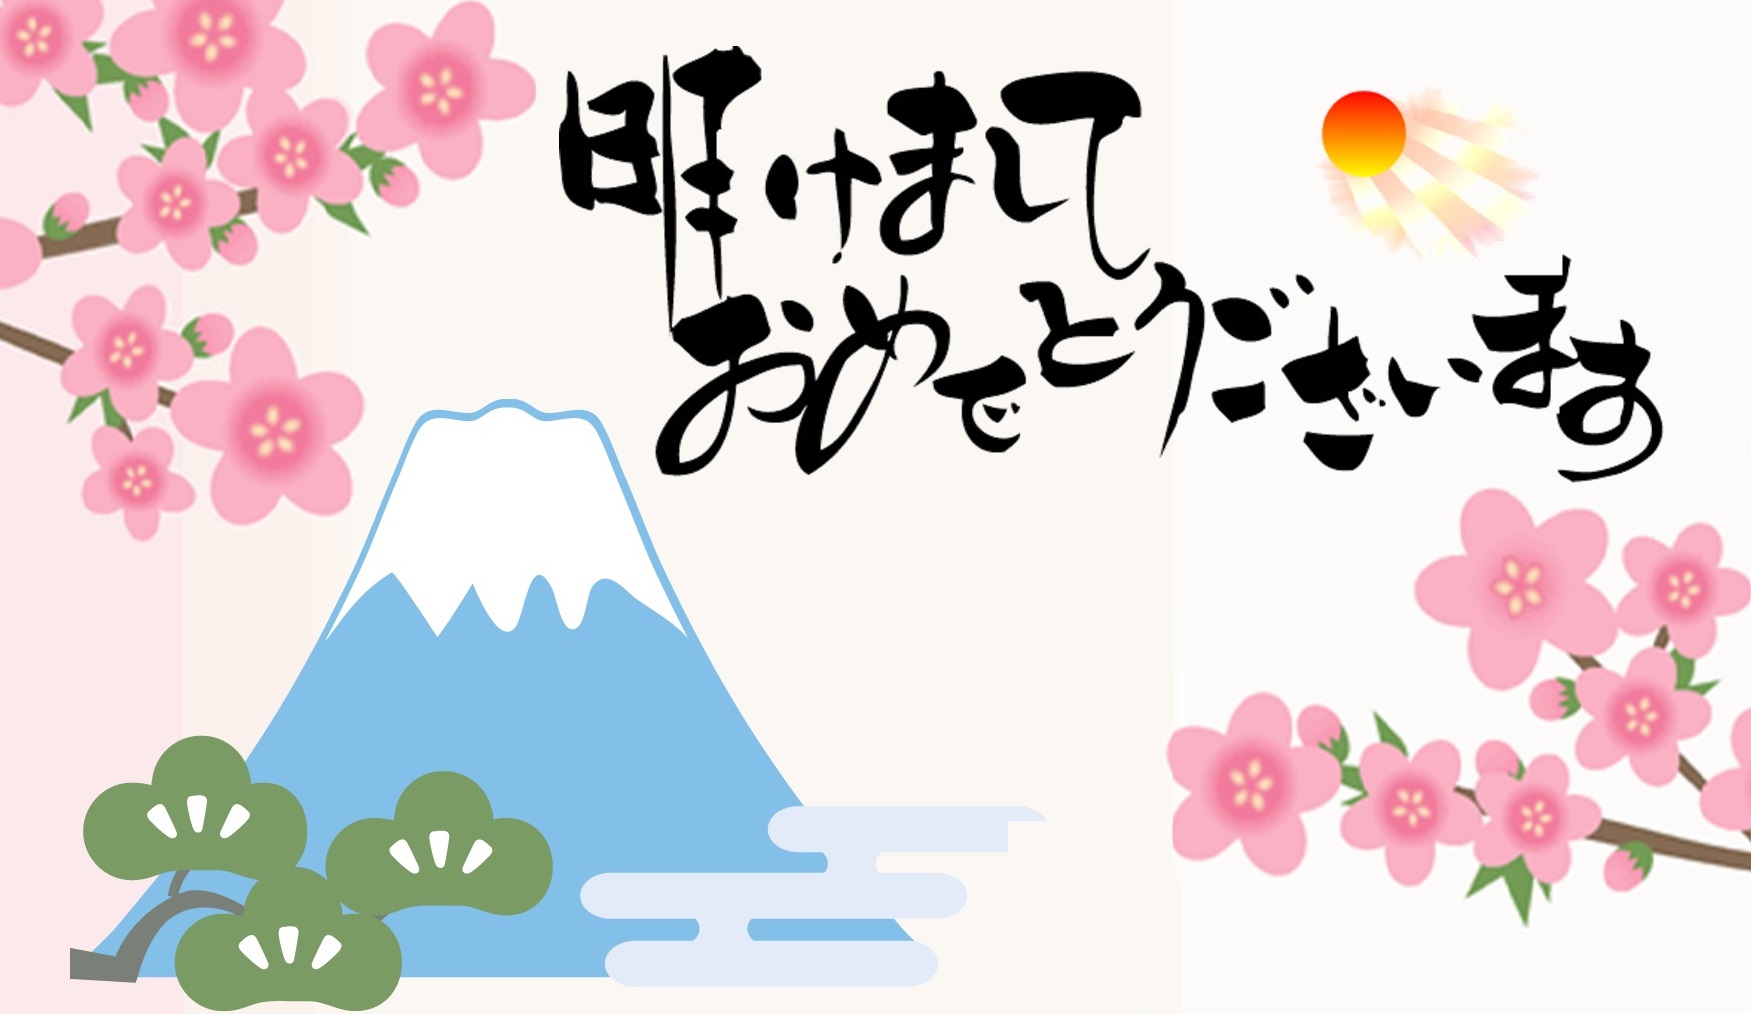 Hướng dẫn cách viết thiệp chúc mừng năm mới bằng tiếng Nhật đơn giản và dễ dàng